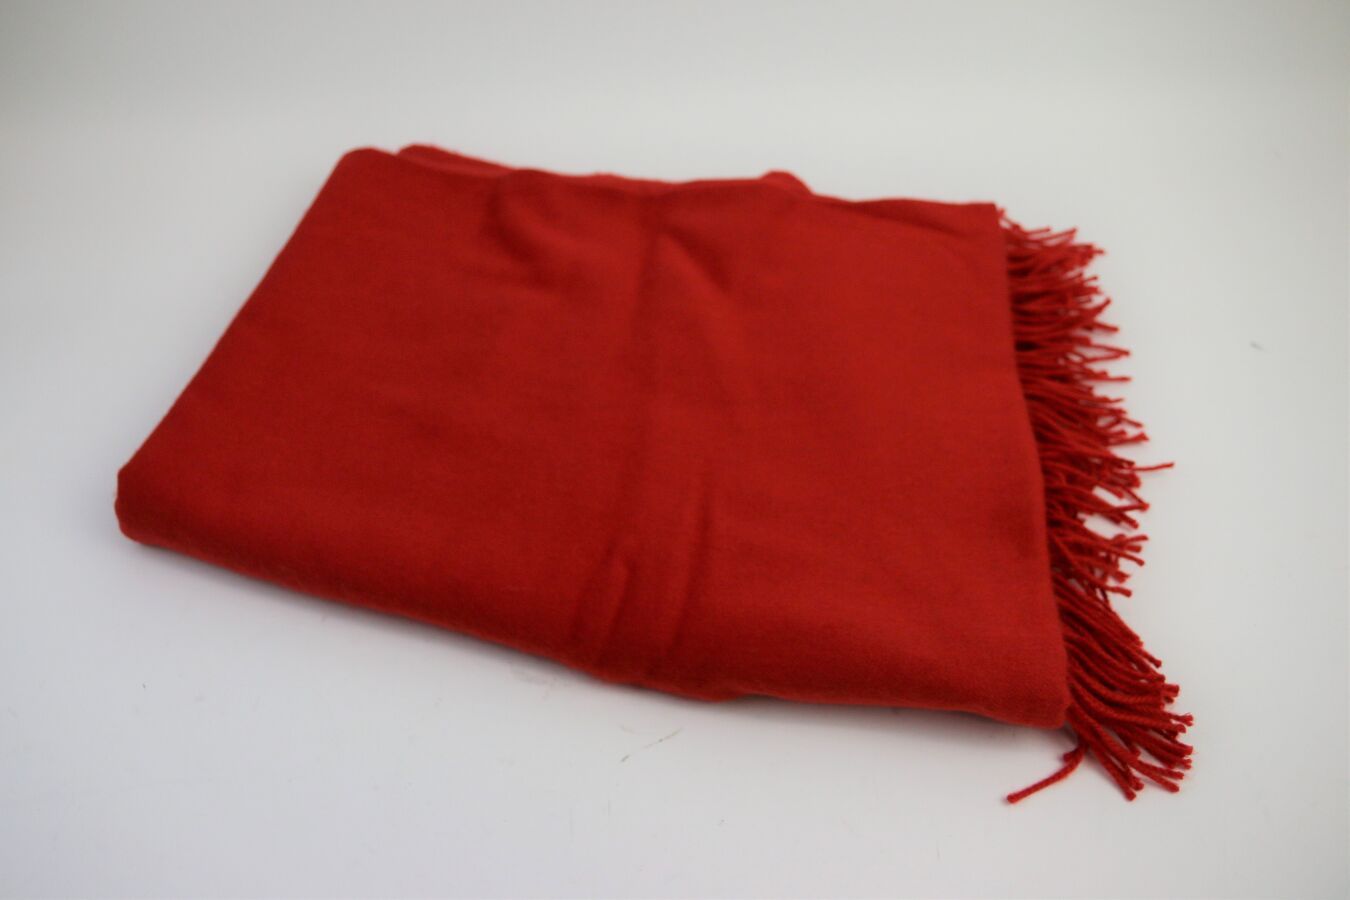 Null HERMES
Roter Schal aus Kaschmir und Wolle
140 x 176 cm
(Guter Zustand)